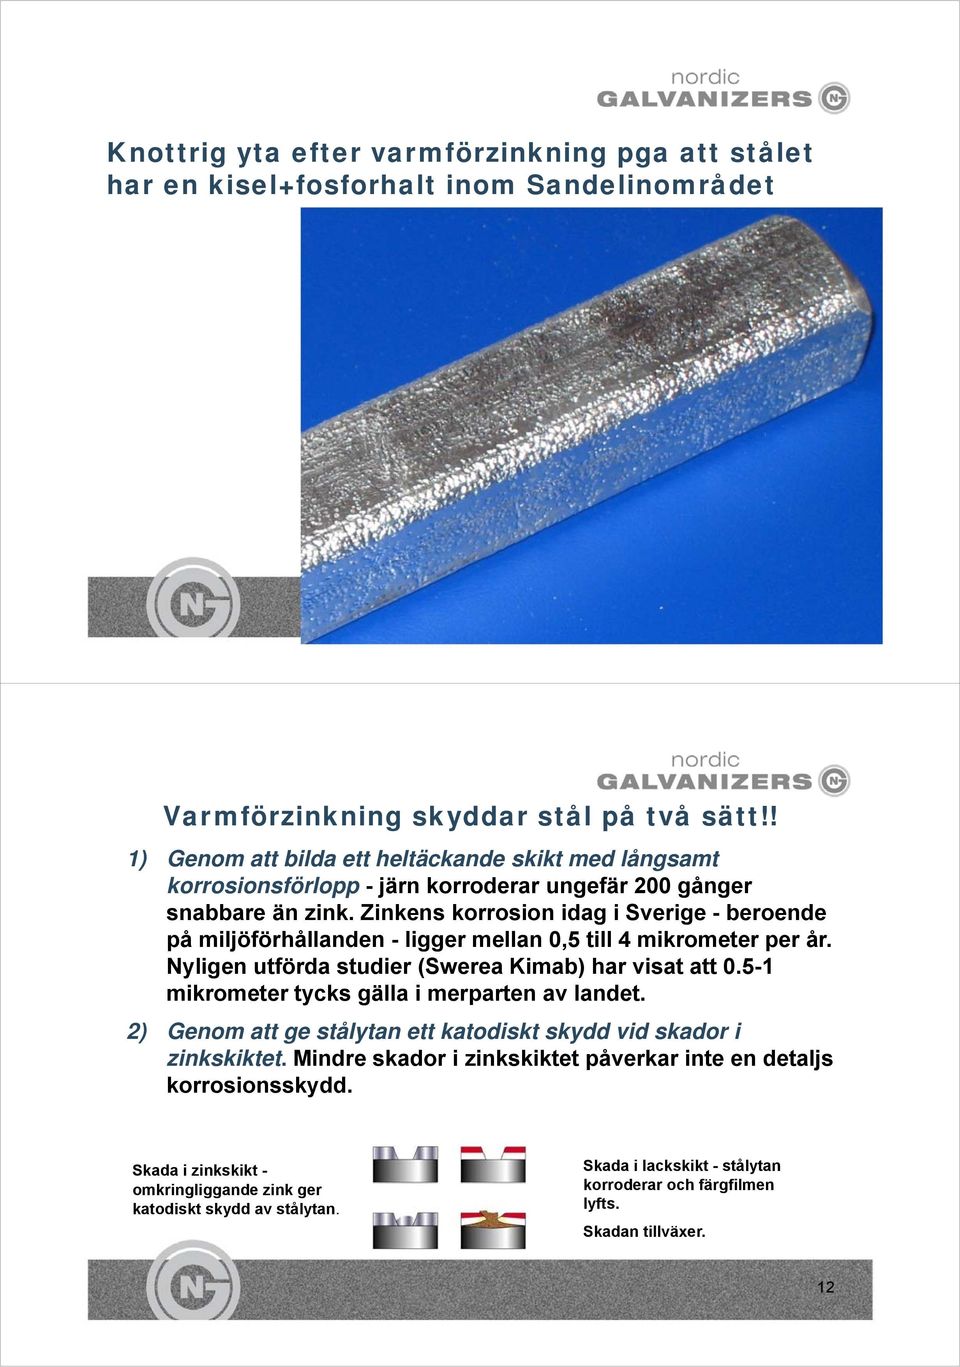 Zinkens korrosion idag i Sverige - beroende på miljöförhållanden - ligger mellan 0,5 till 4 mikrometer per år. Nyligen utförda studier (Swerea Kimab) har visat att 0.